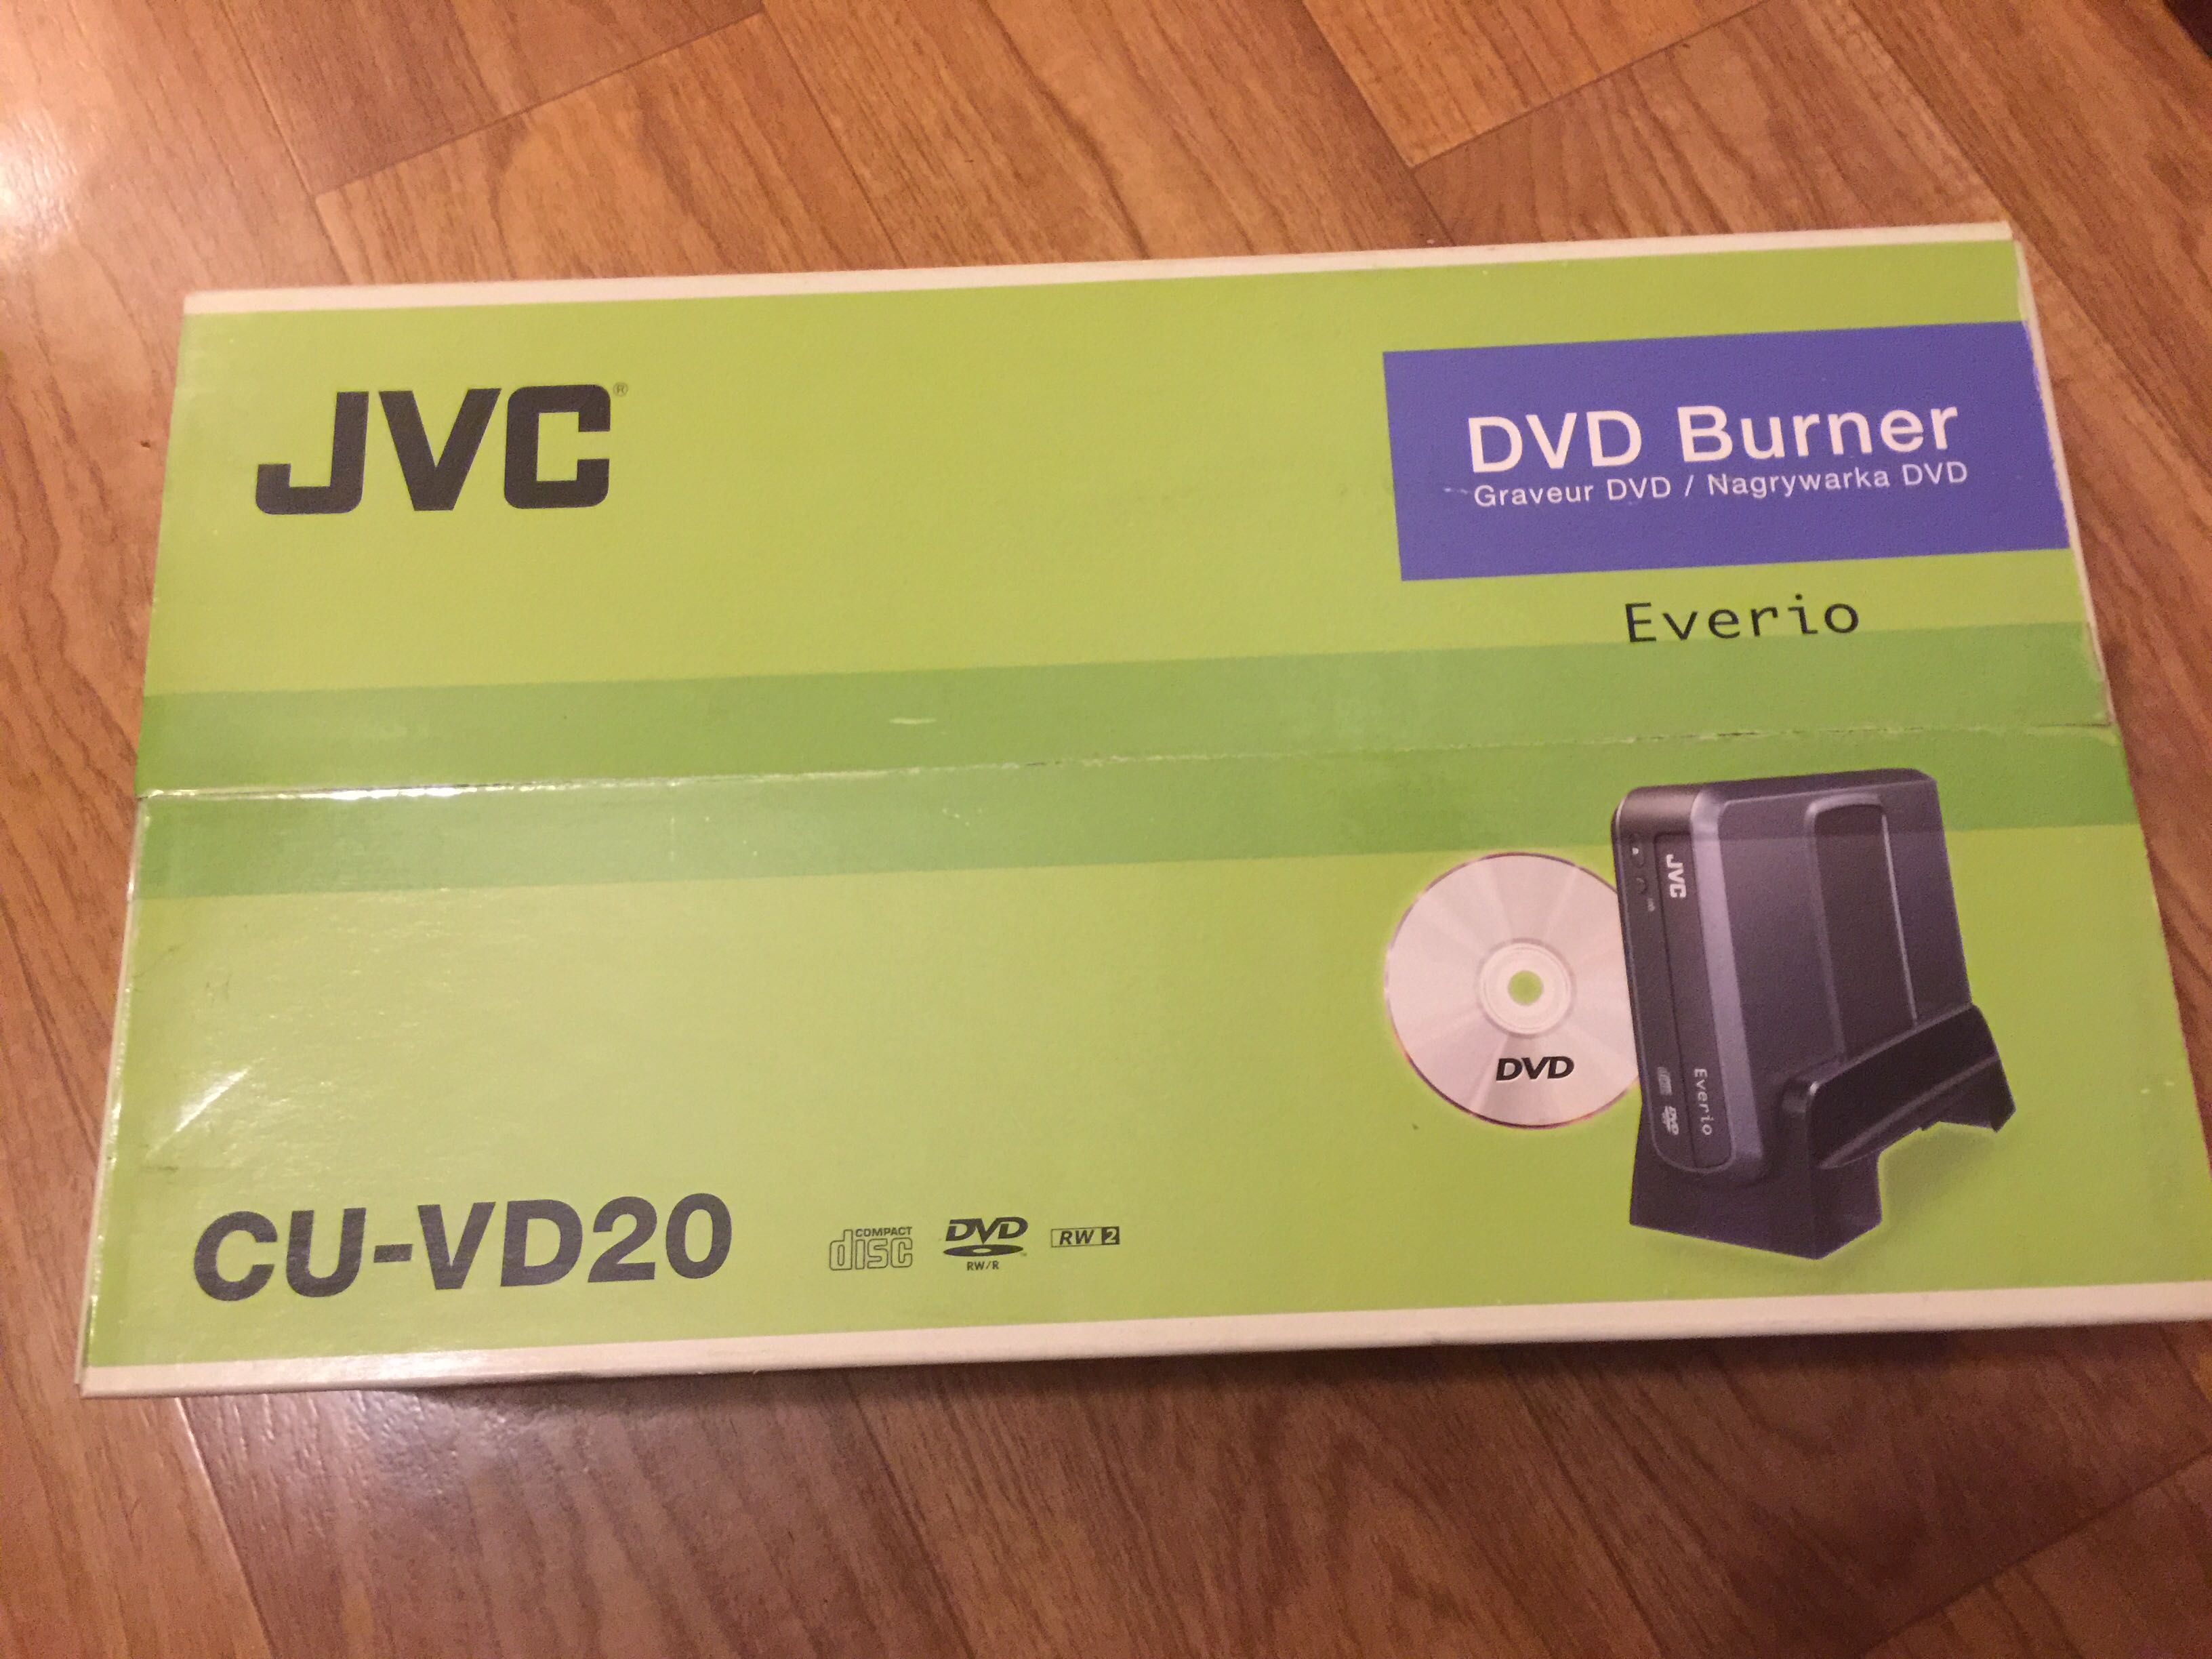 DVD рекордер JVC CU-VD20er.  Новий